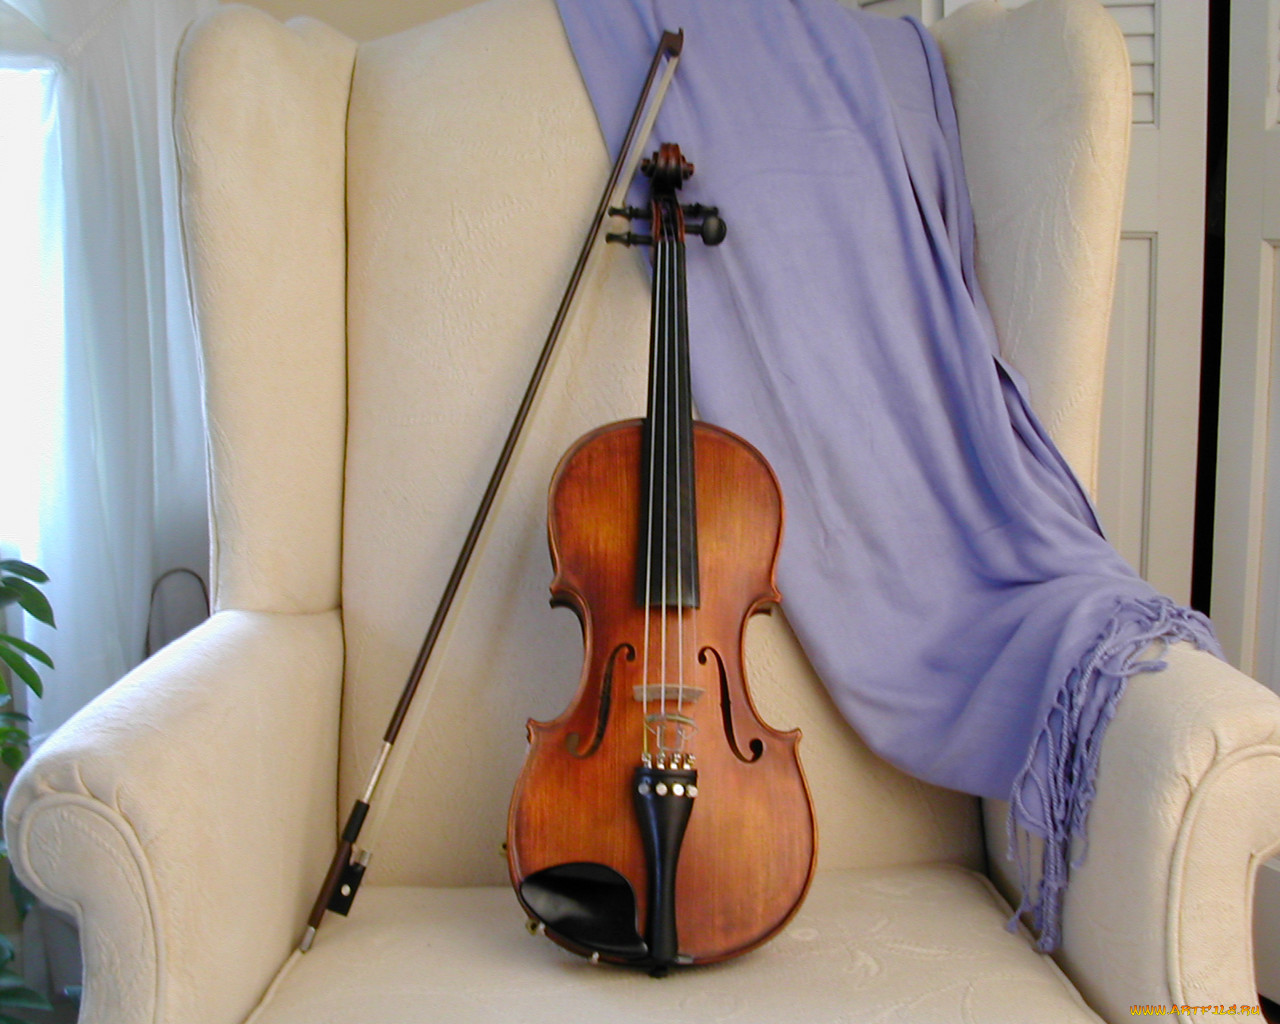 Фотография скрипки. Скрипка. Скрипка музыкальный инструмент. Изображение скрипки. Скрипка картинка.